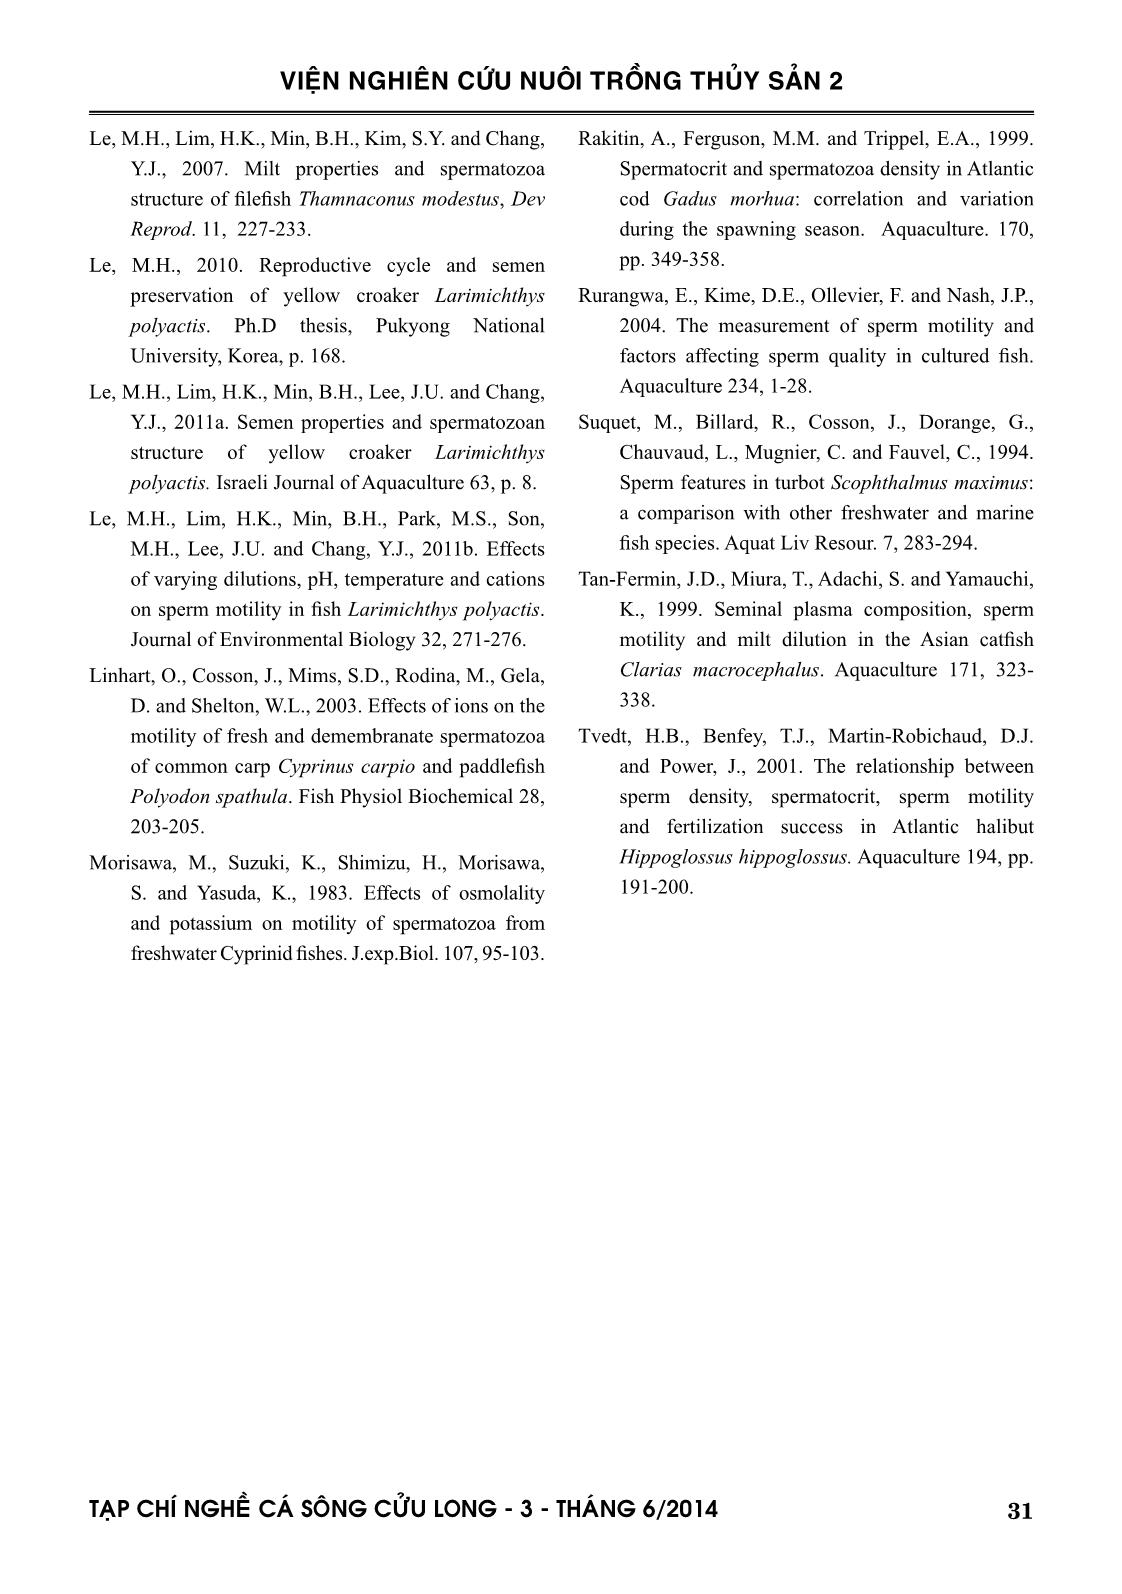 Một số đặc tính của tinh trùng và ảnh hưởng các cation lên hoạt lực của tinh trùng cá mú cọp (Epinephelus fuscoguttatus Forsskal, 1775) trang 9